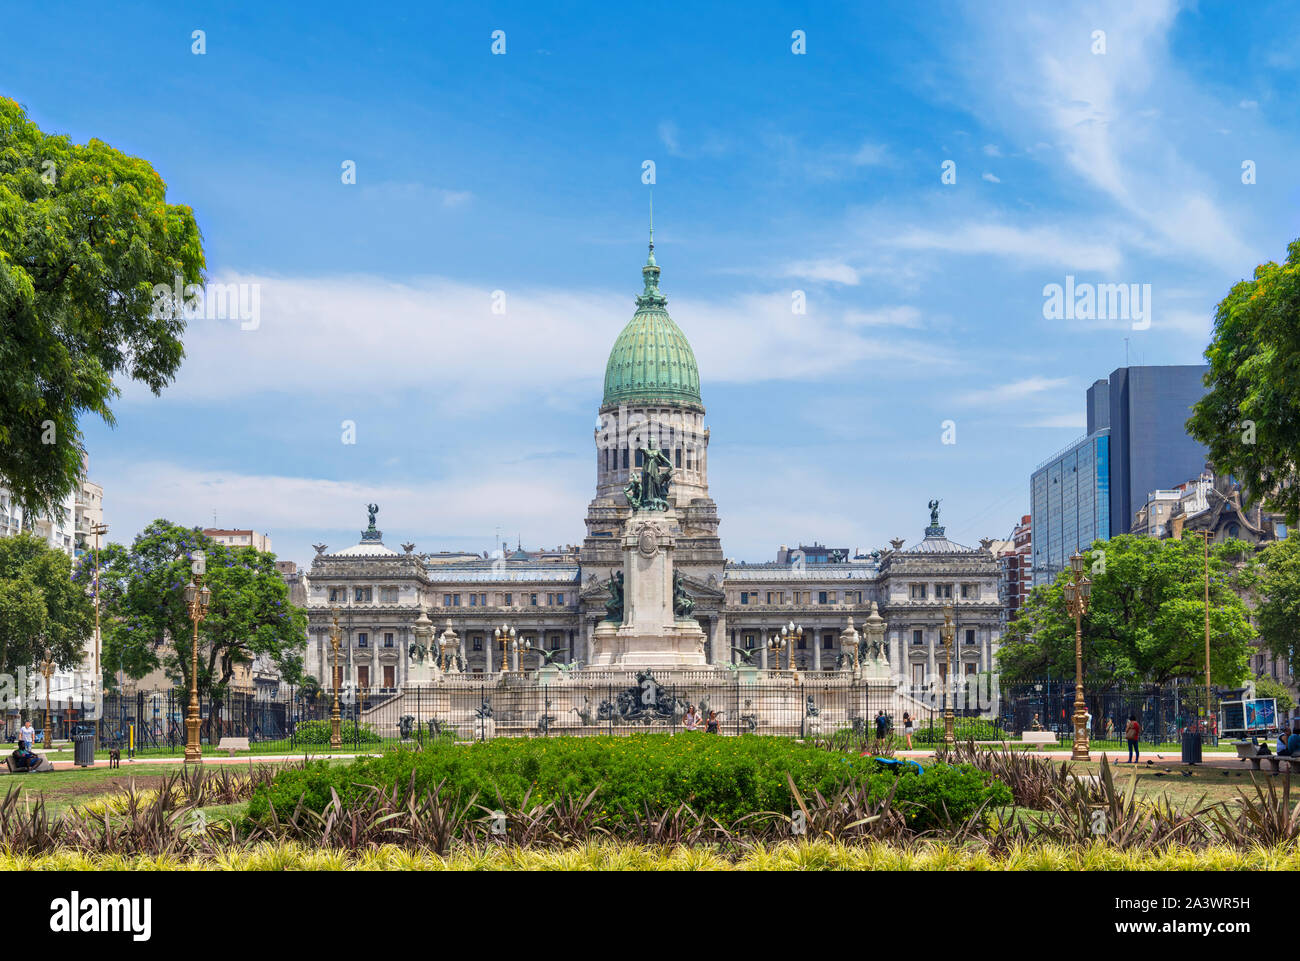 Palacio del Congreso (Congressional Palace), Plaza del Congreso, Buenos Aires, Argentina Stock Photo